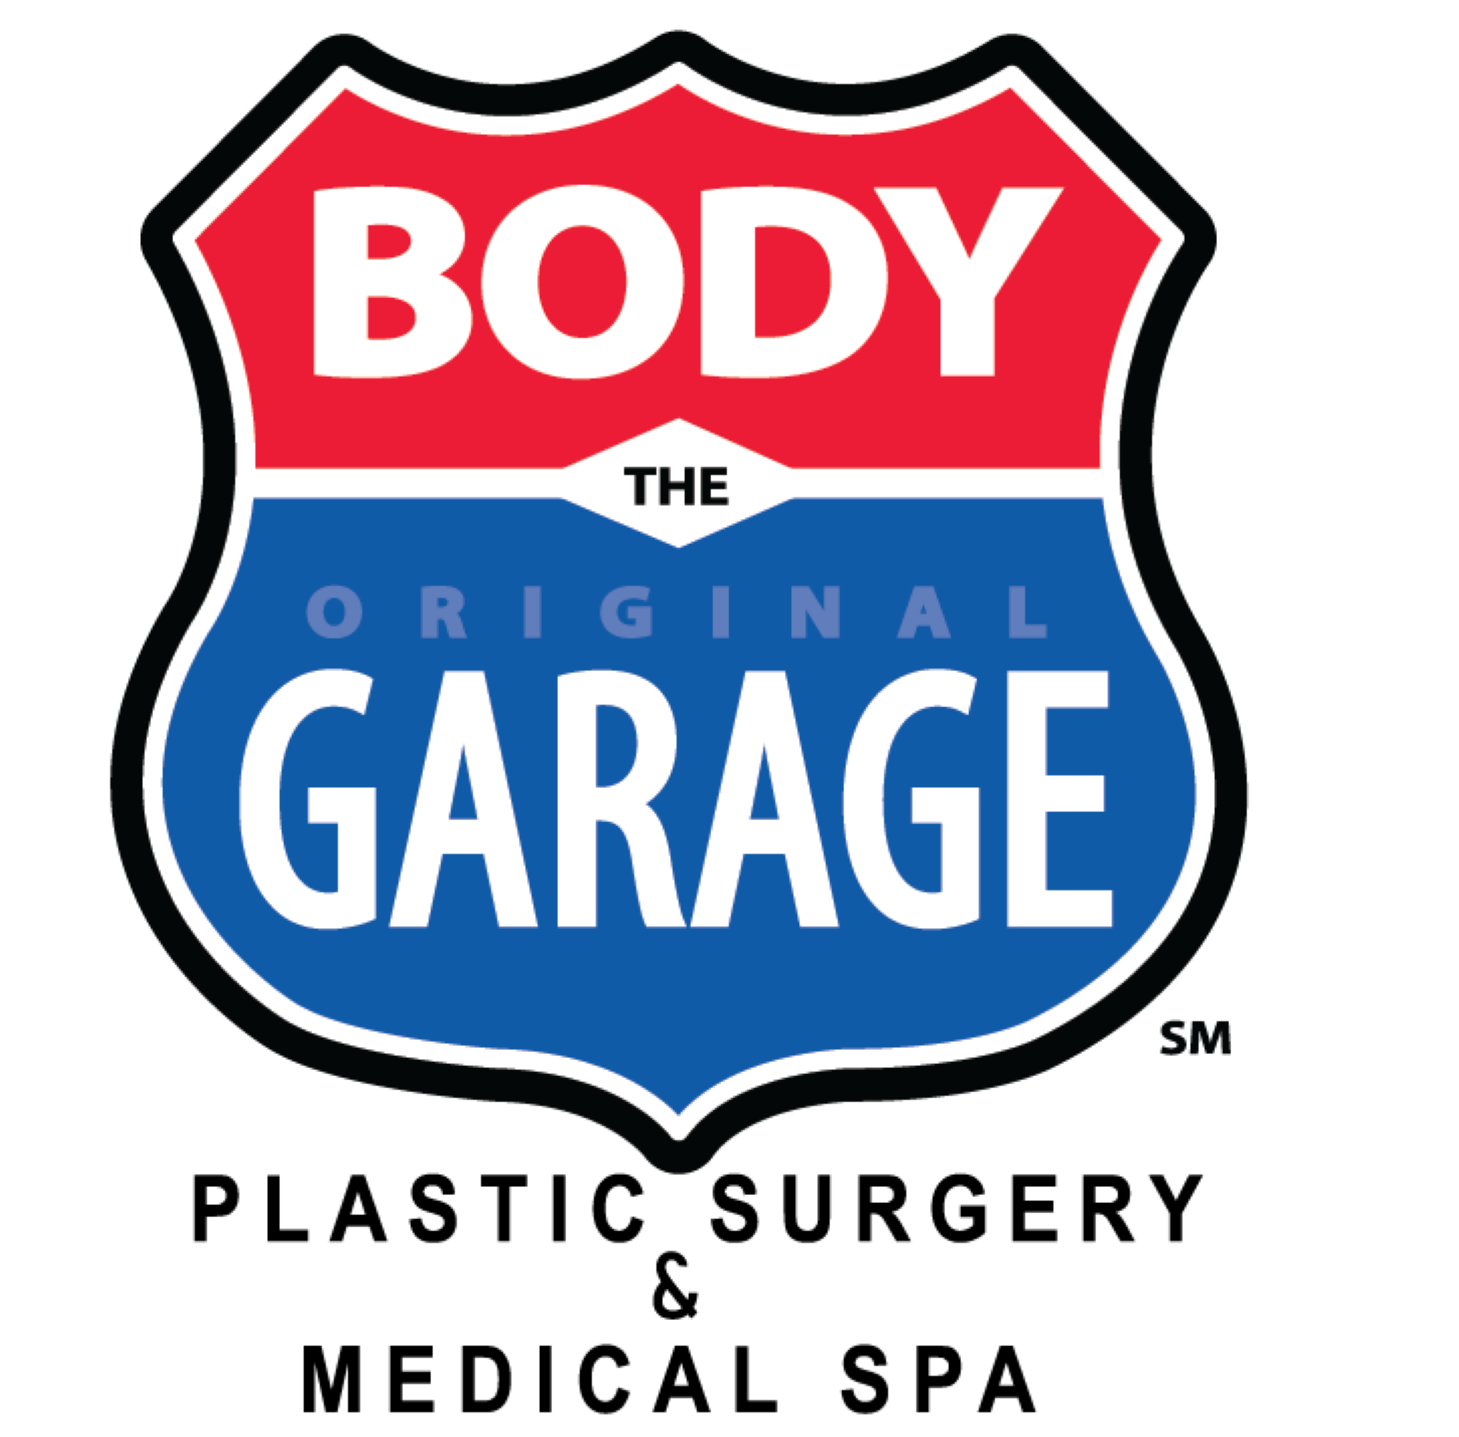 Body Garage